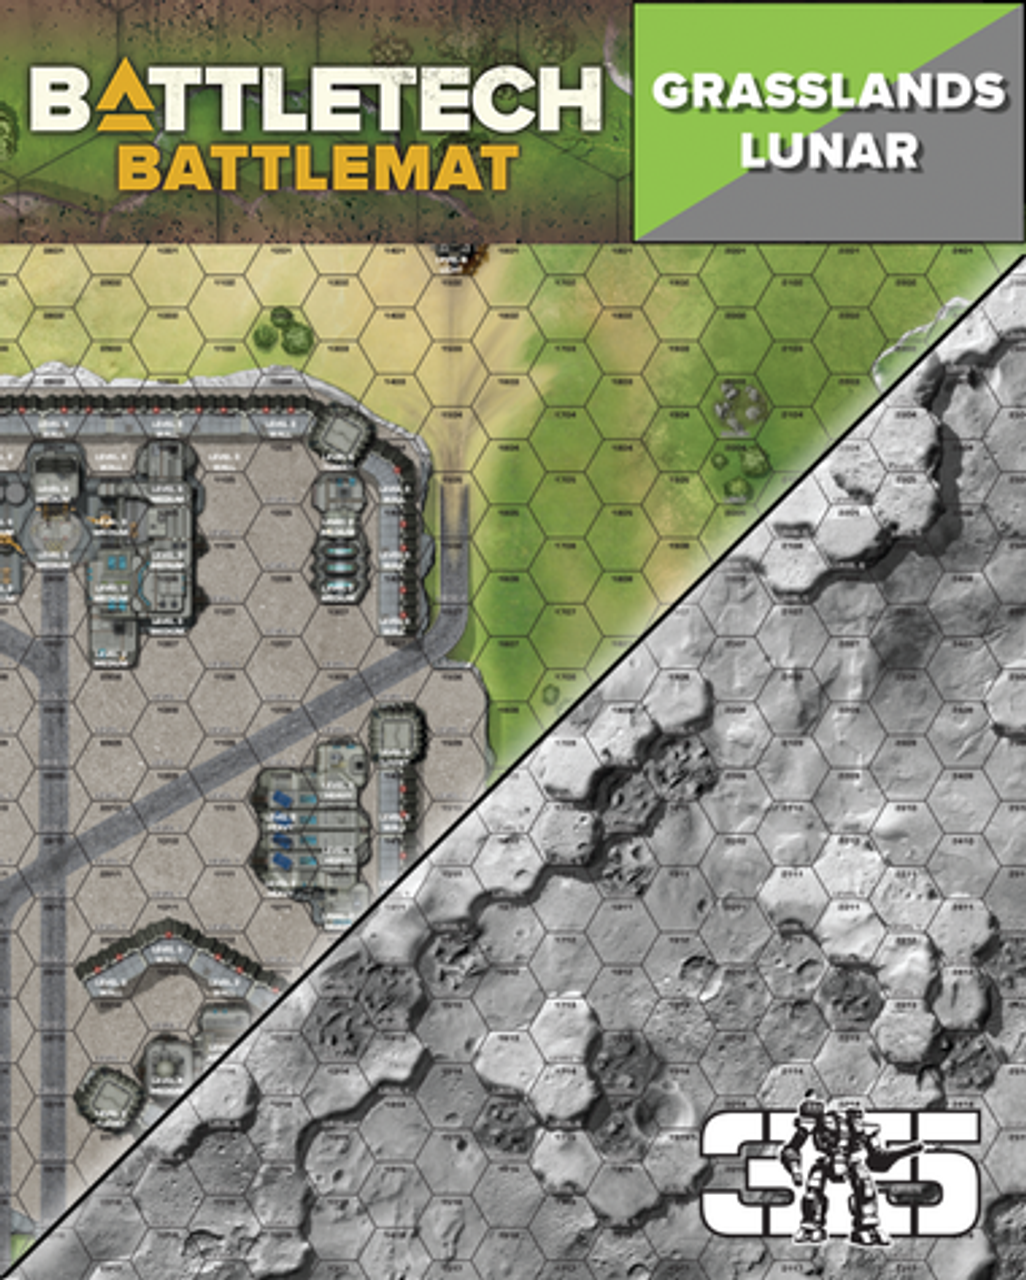 BattleTech - Battle Mat: Grasslands/ Lunar